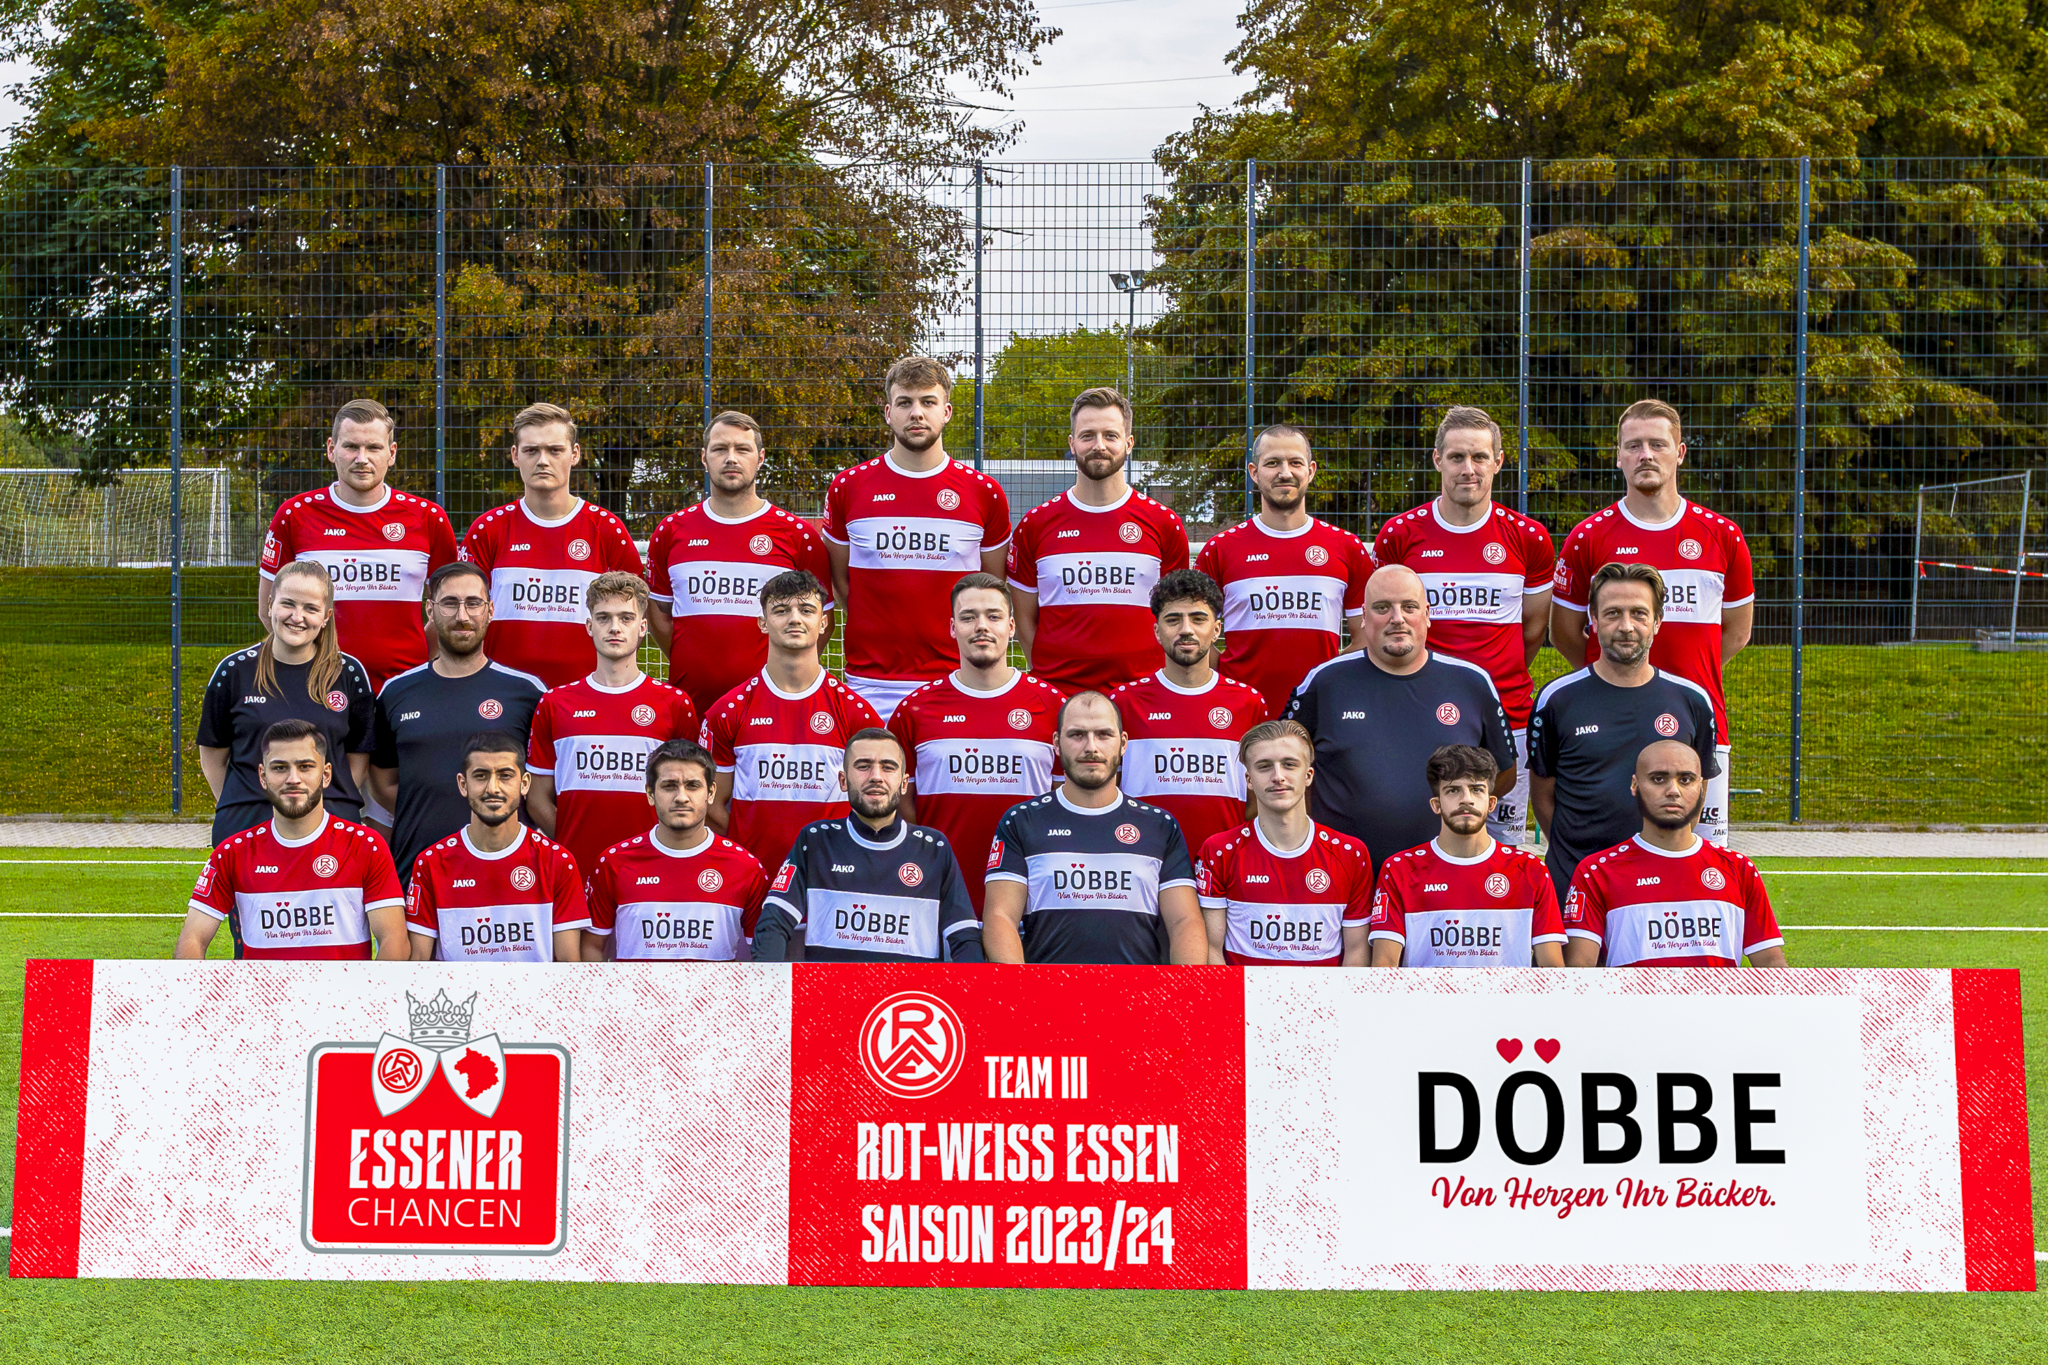 Team III – Rot-Weiss Essen